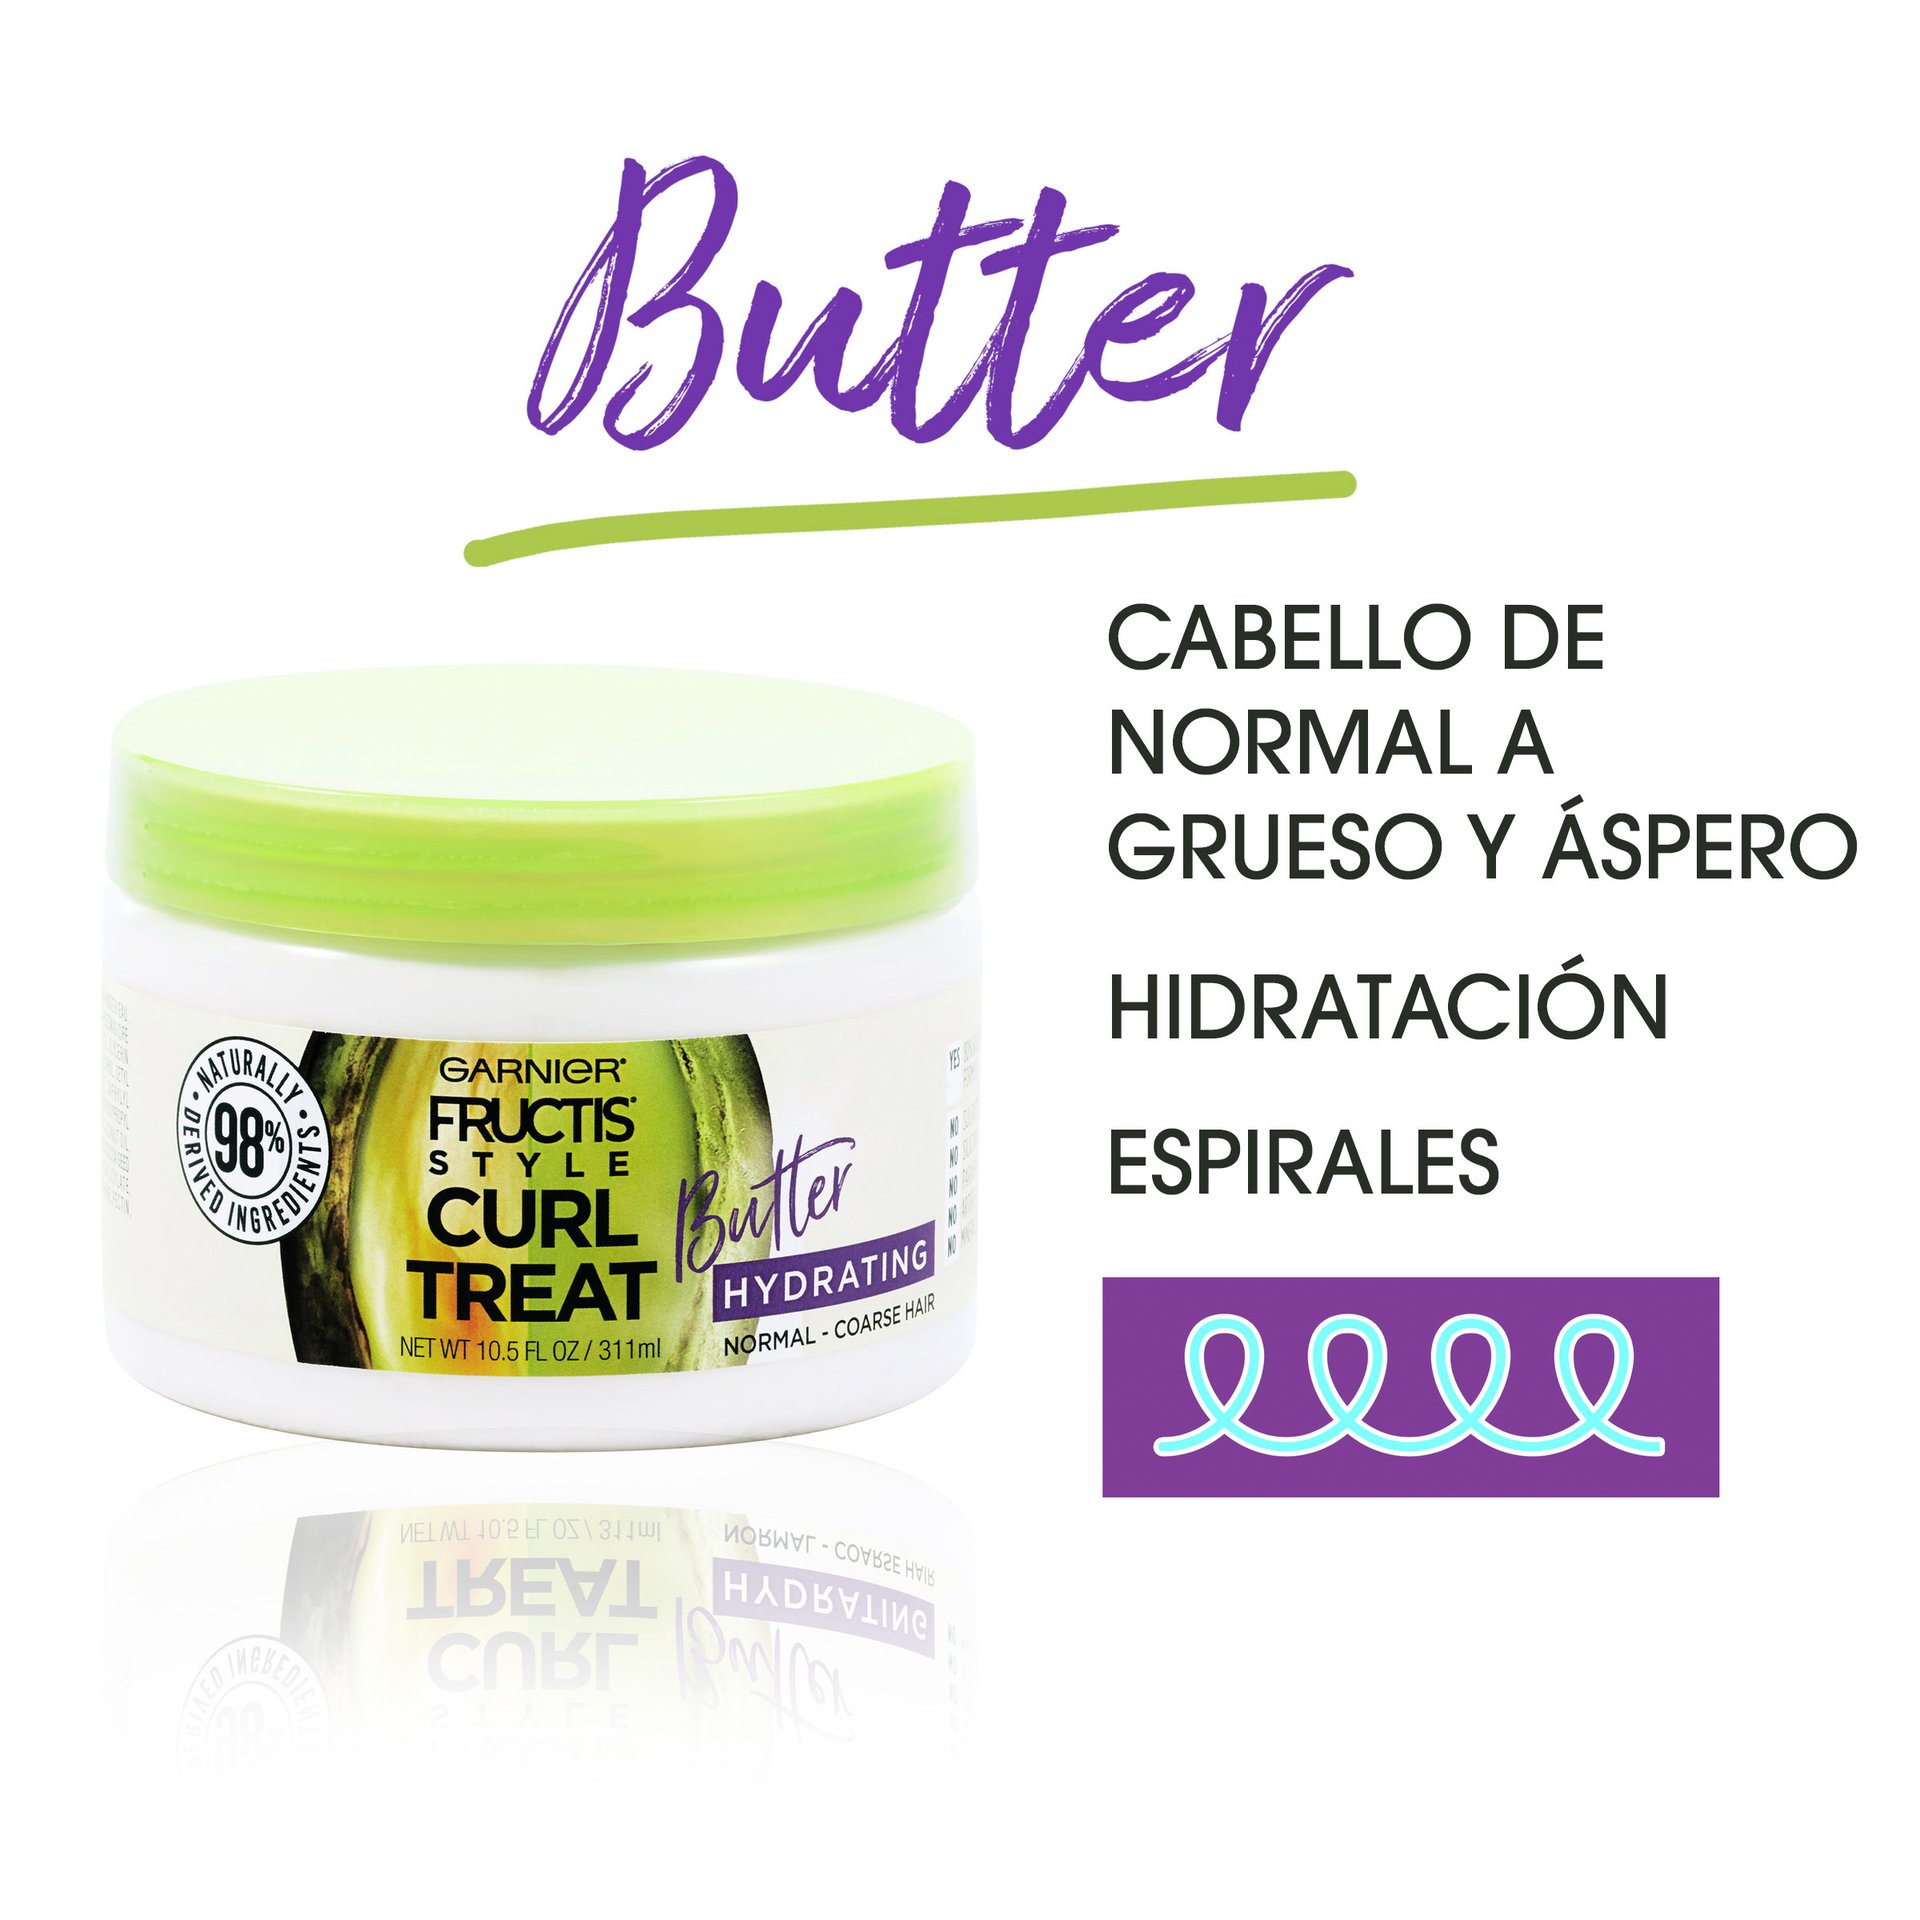 Curl Treat butter benefits